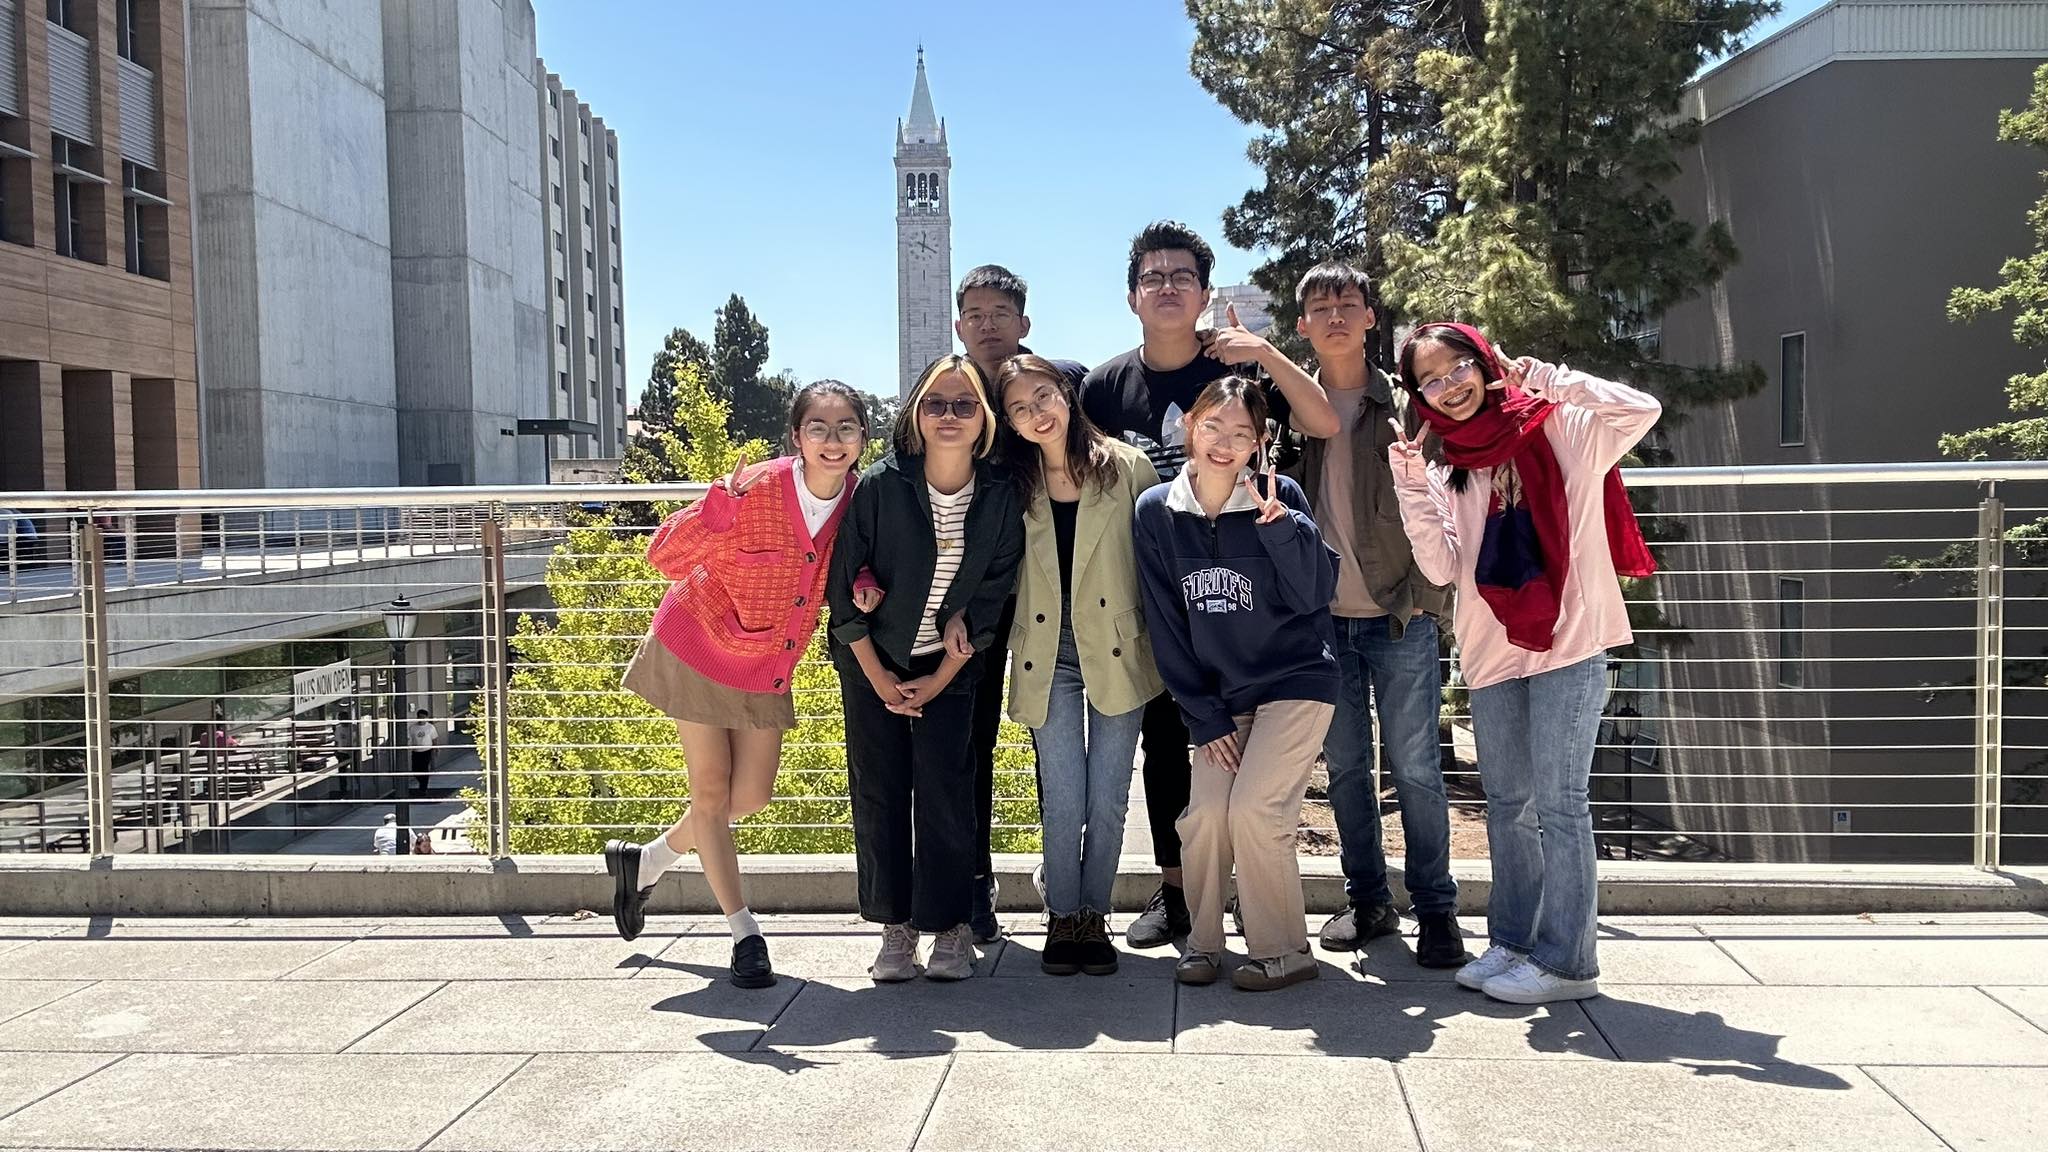 Kien cùng các thành viên Việt Nam tham dự SVIC trong khuôn viên Đại học California tại Berkeley